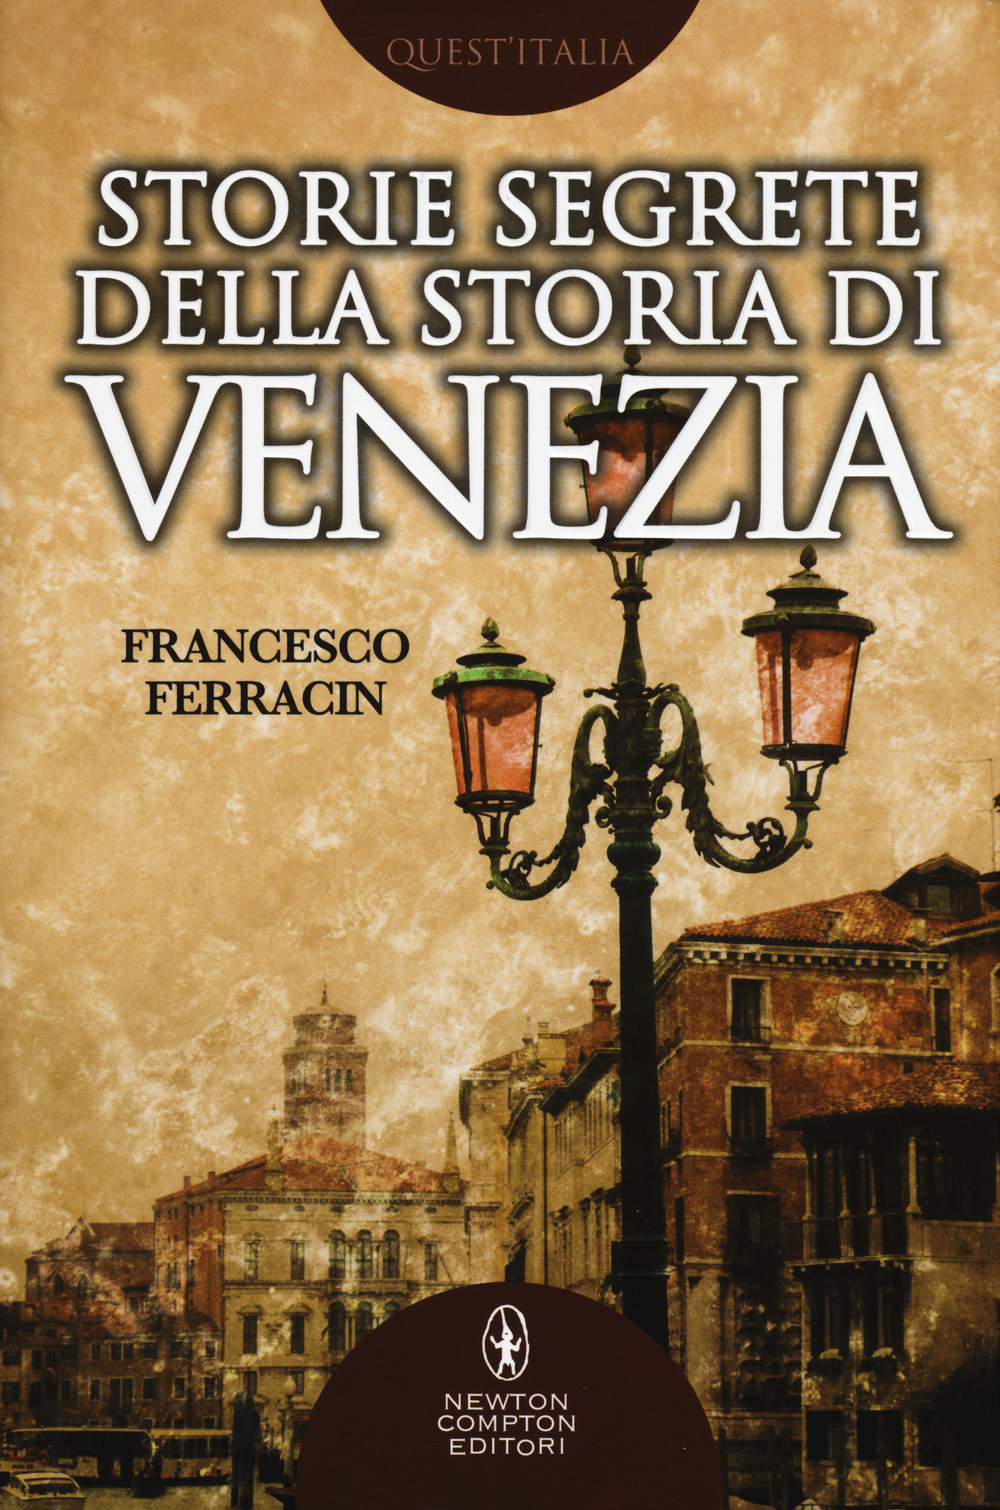 Storie segrete della storia di Venezia. Il fascino di Venezia nelle vicende meno note della sua storia millenaria